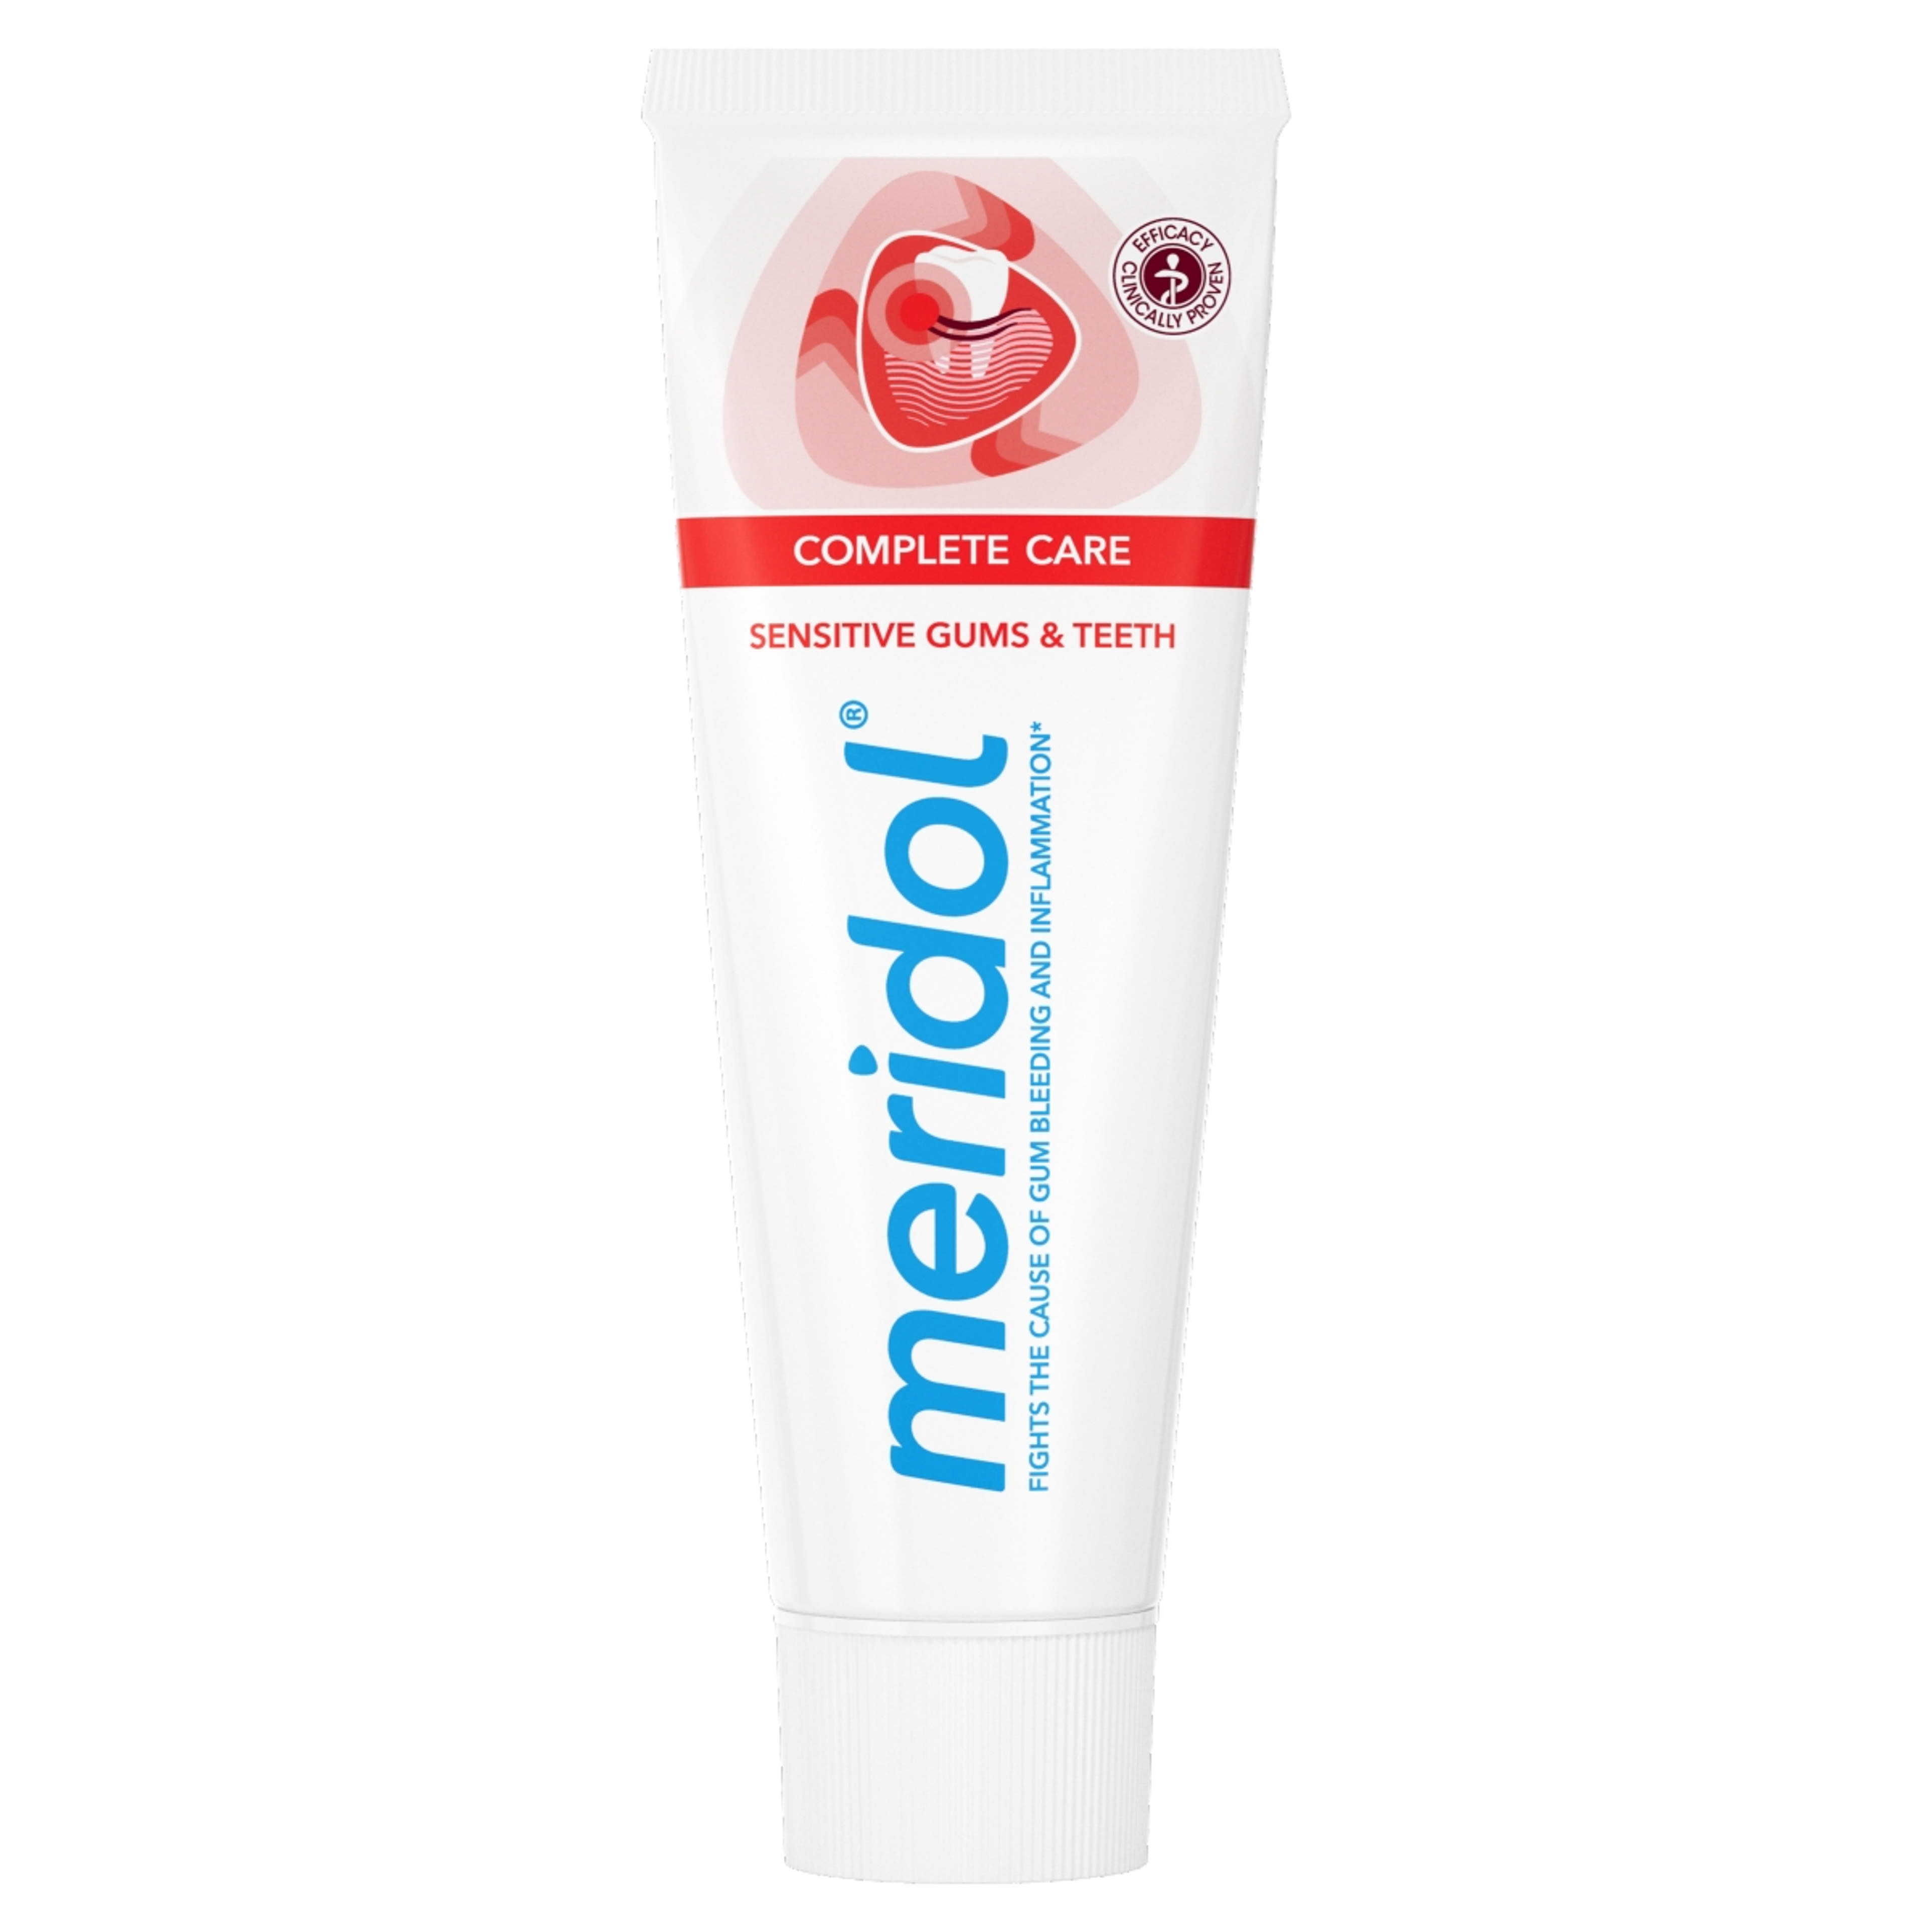 Meridol Complete Care fogkrém érzékeny fogíny és fogak védelmére - 75 ml-3